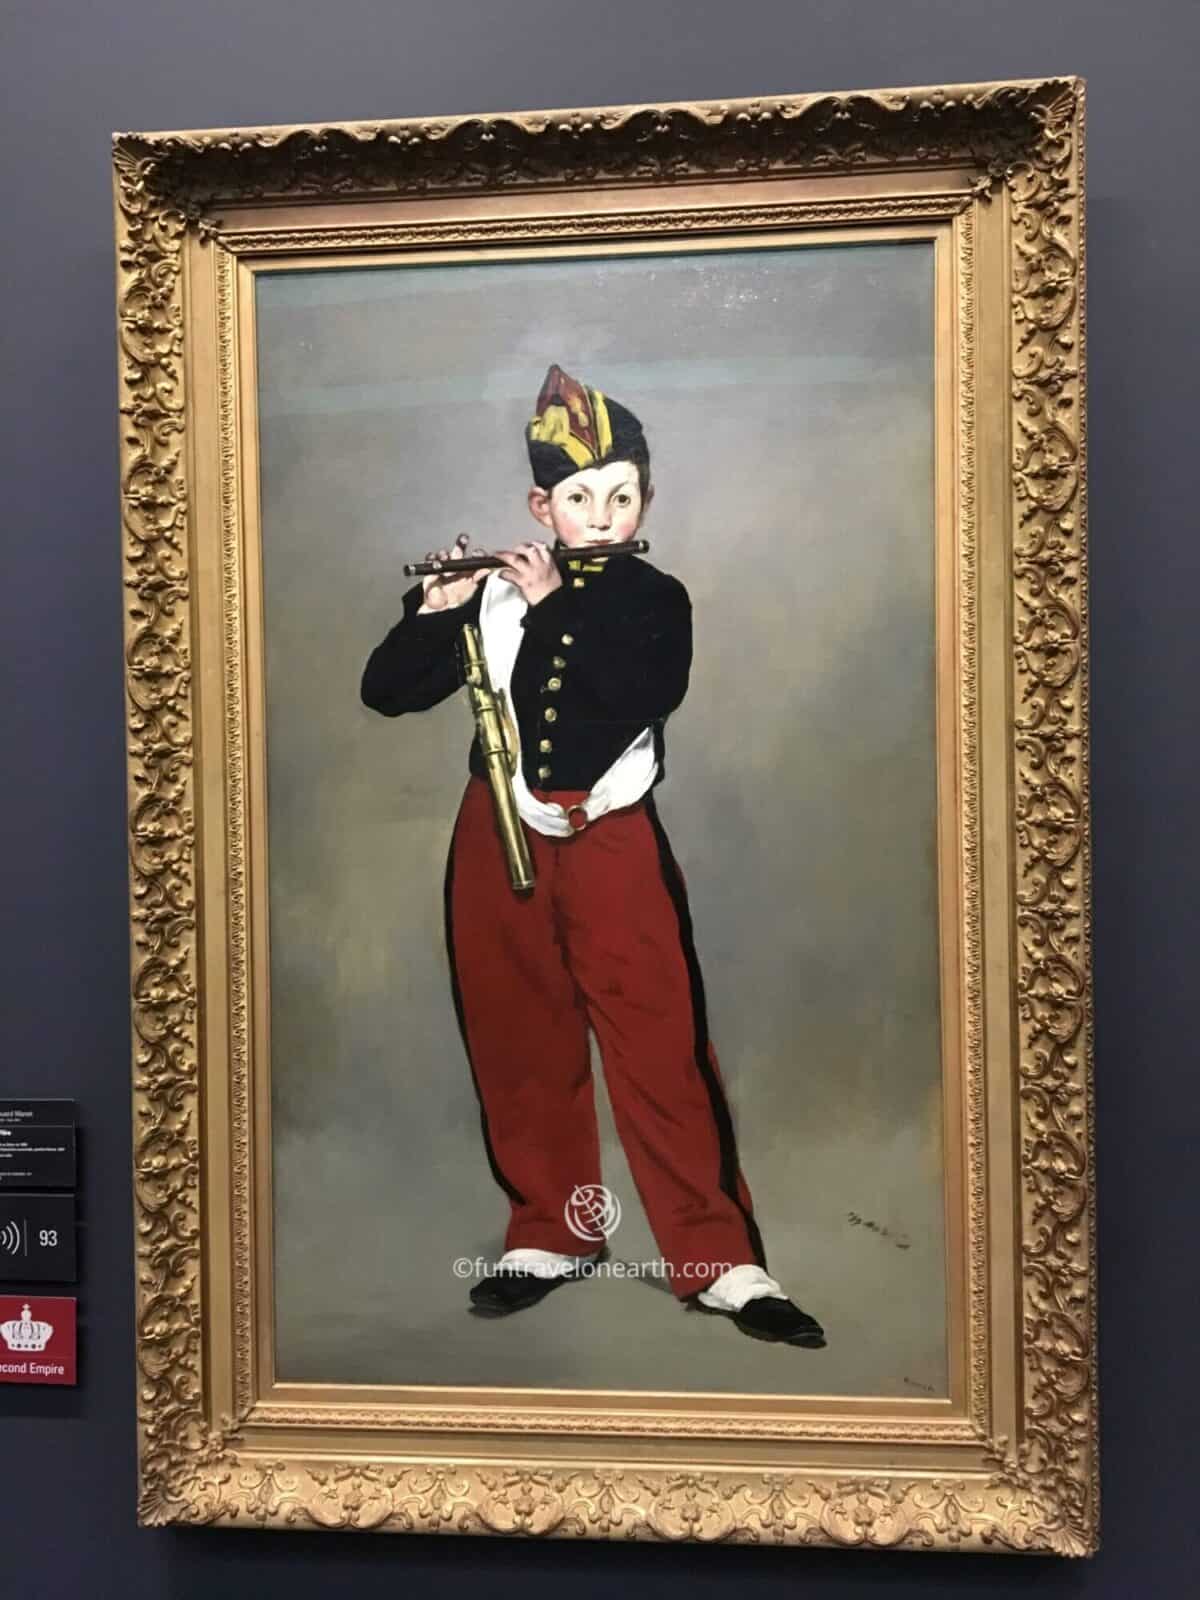 Le Joueur de fifre,Édouard Manet,Musée d'Orsay